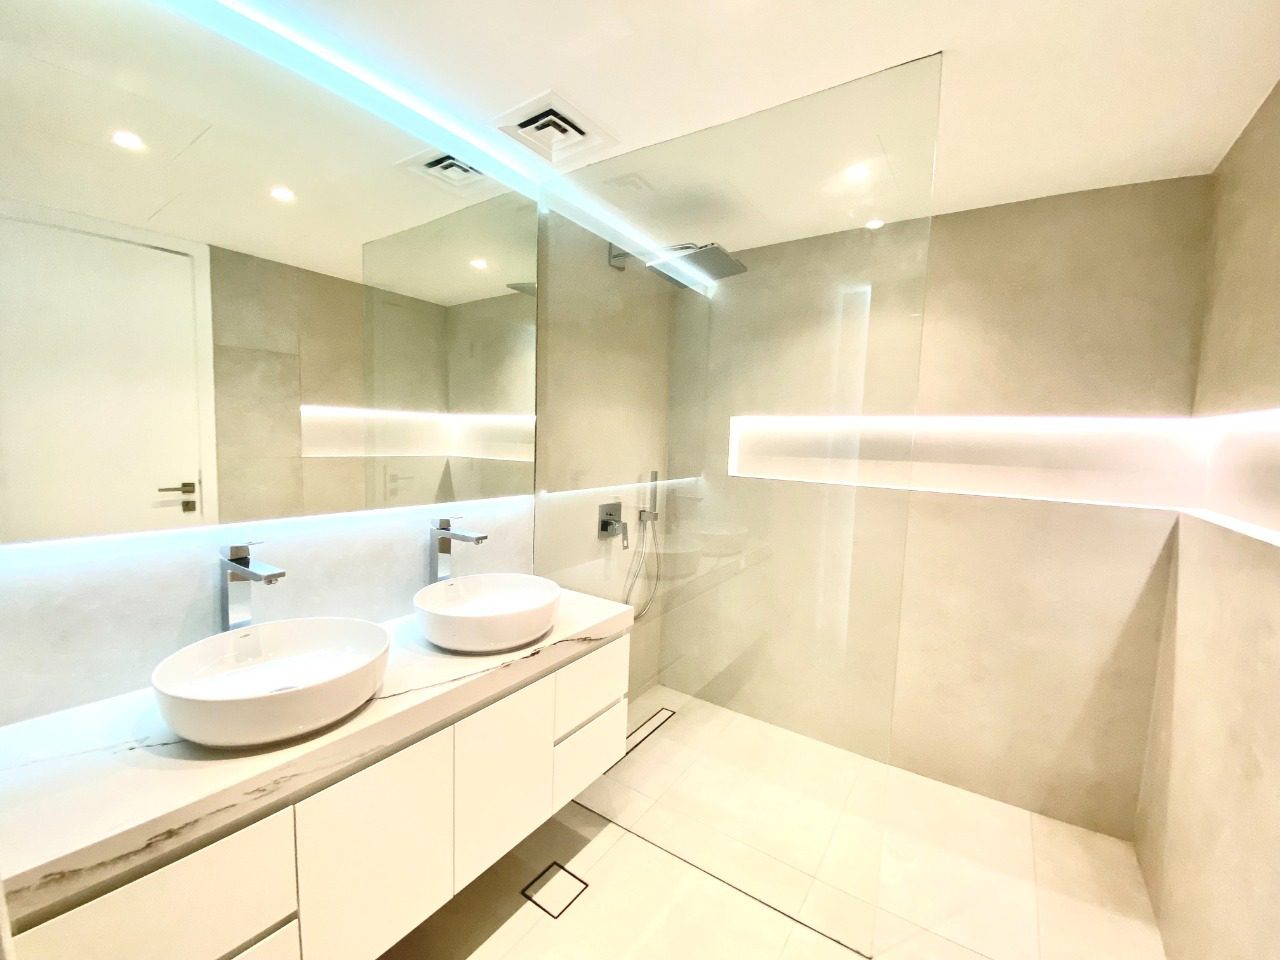 Aximer Ceramic Dubai Jumeirah Park Villa Inovation Project with Porcelain Slabs | Bathroom